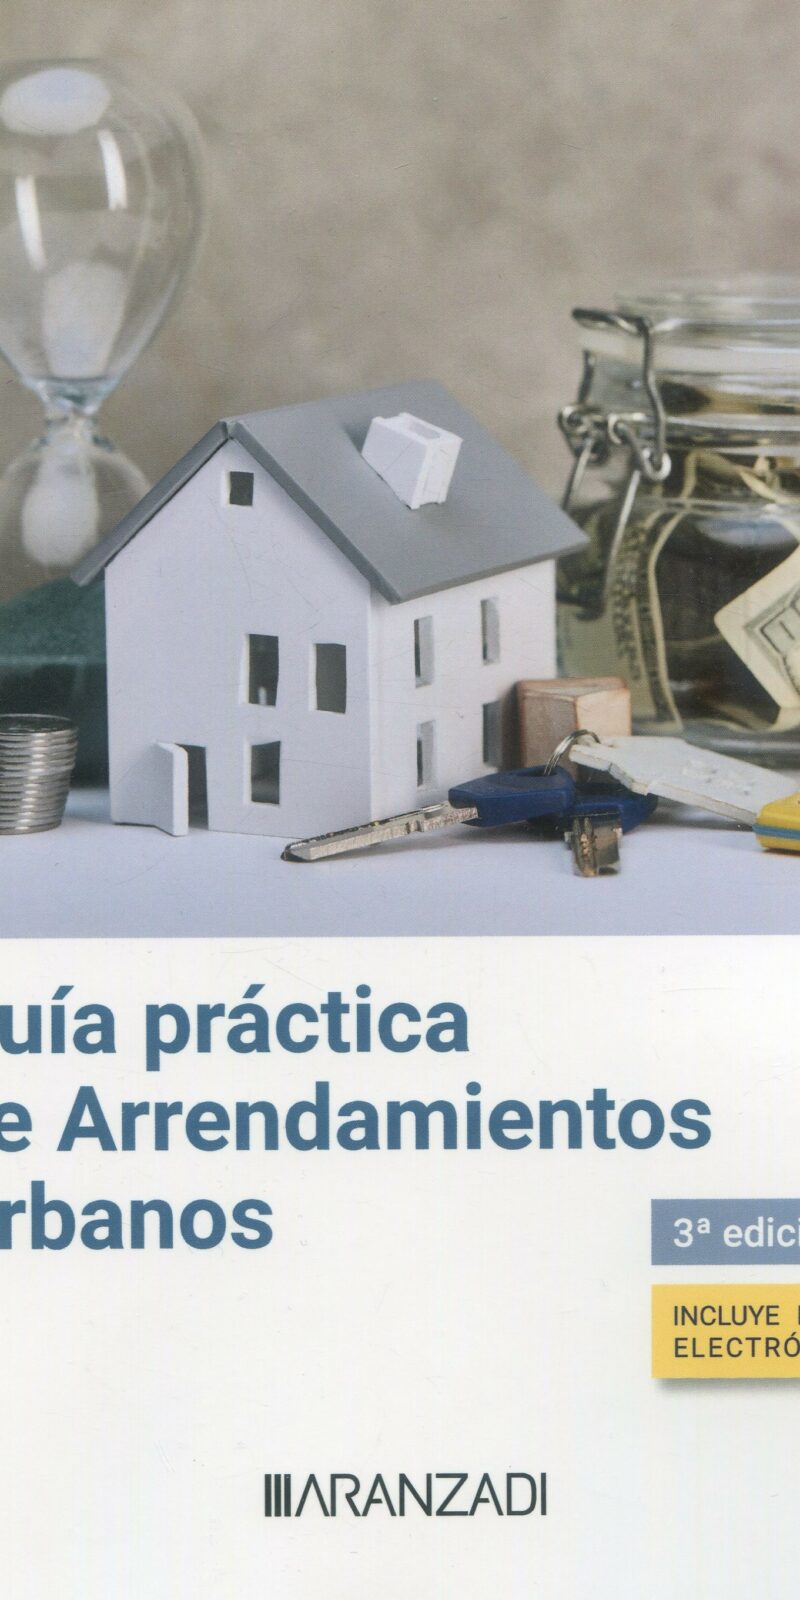 Guía práctica de arrendamientos urbanos / 9788411626965